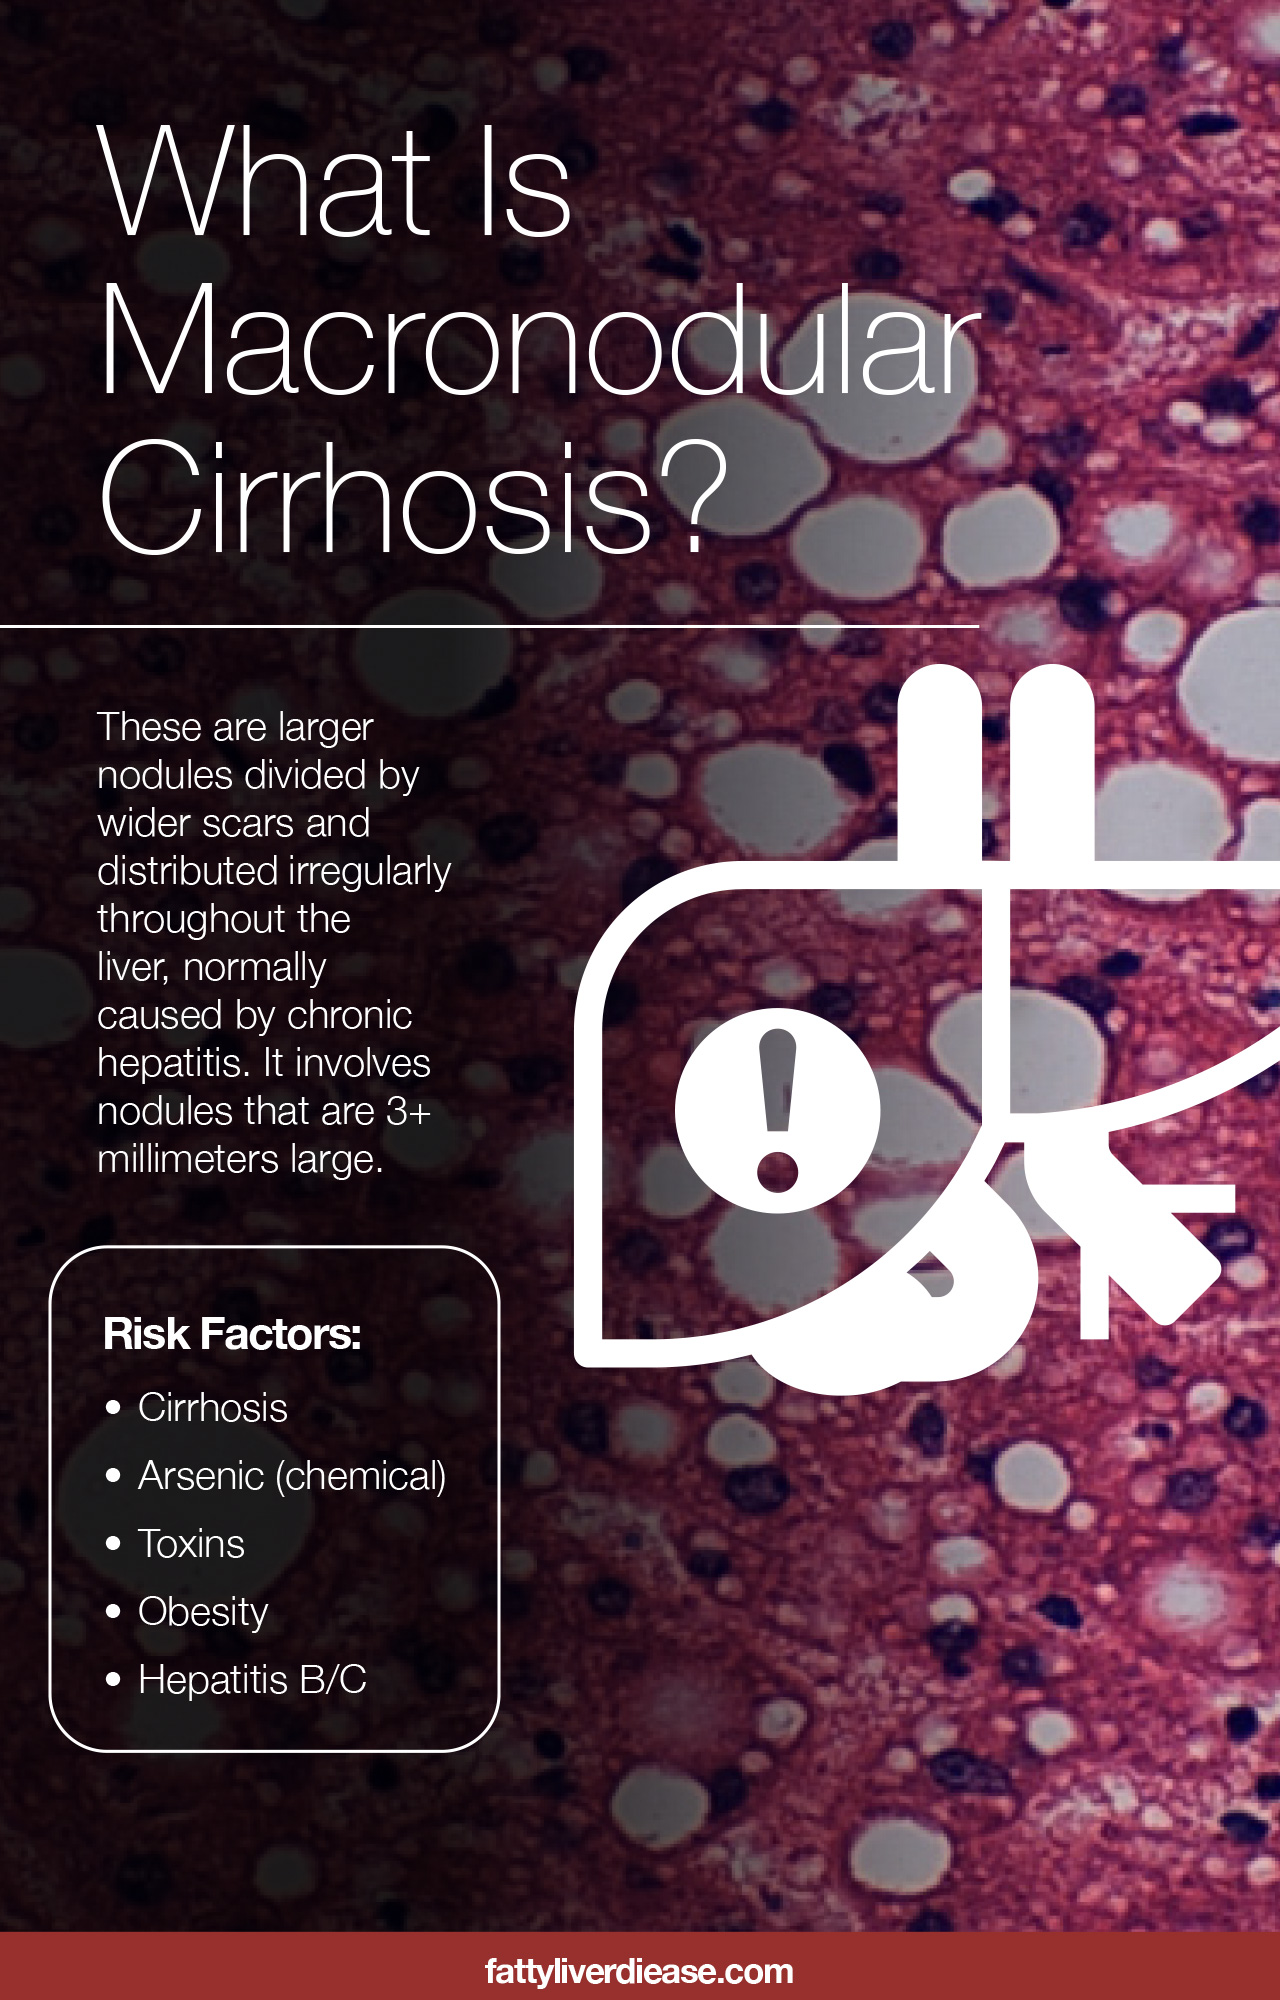 What Is Macronodular Cirrhosis?